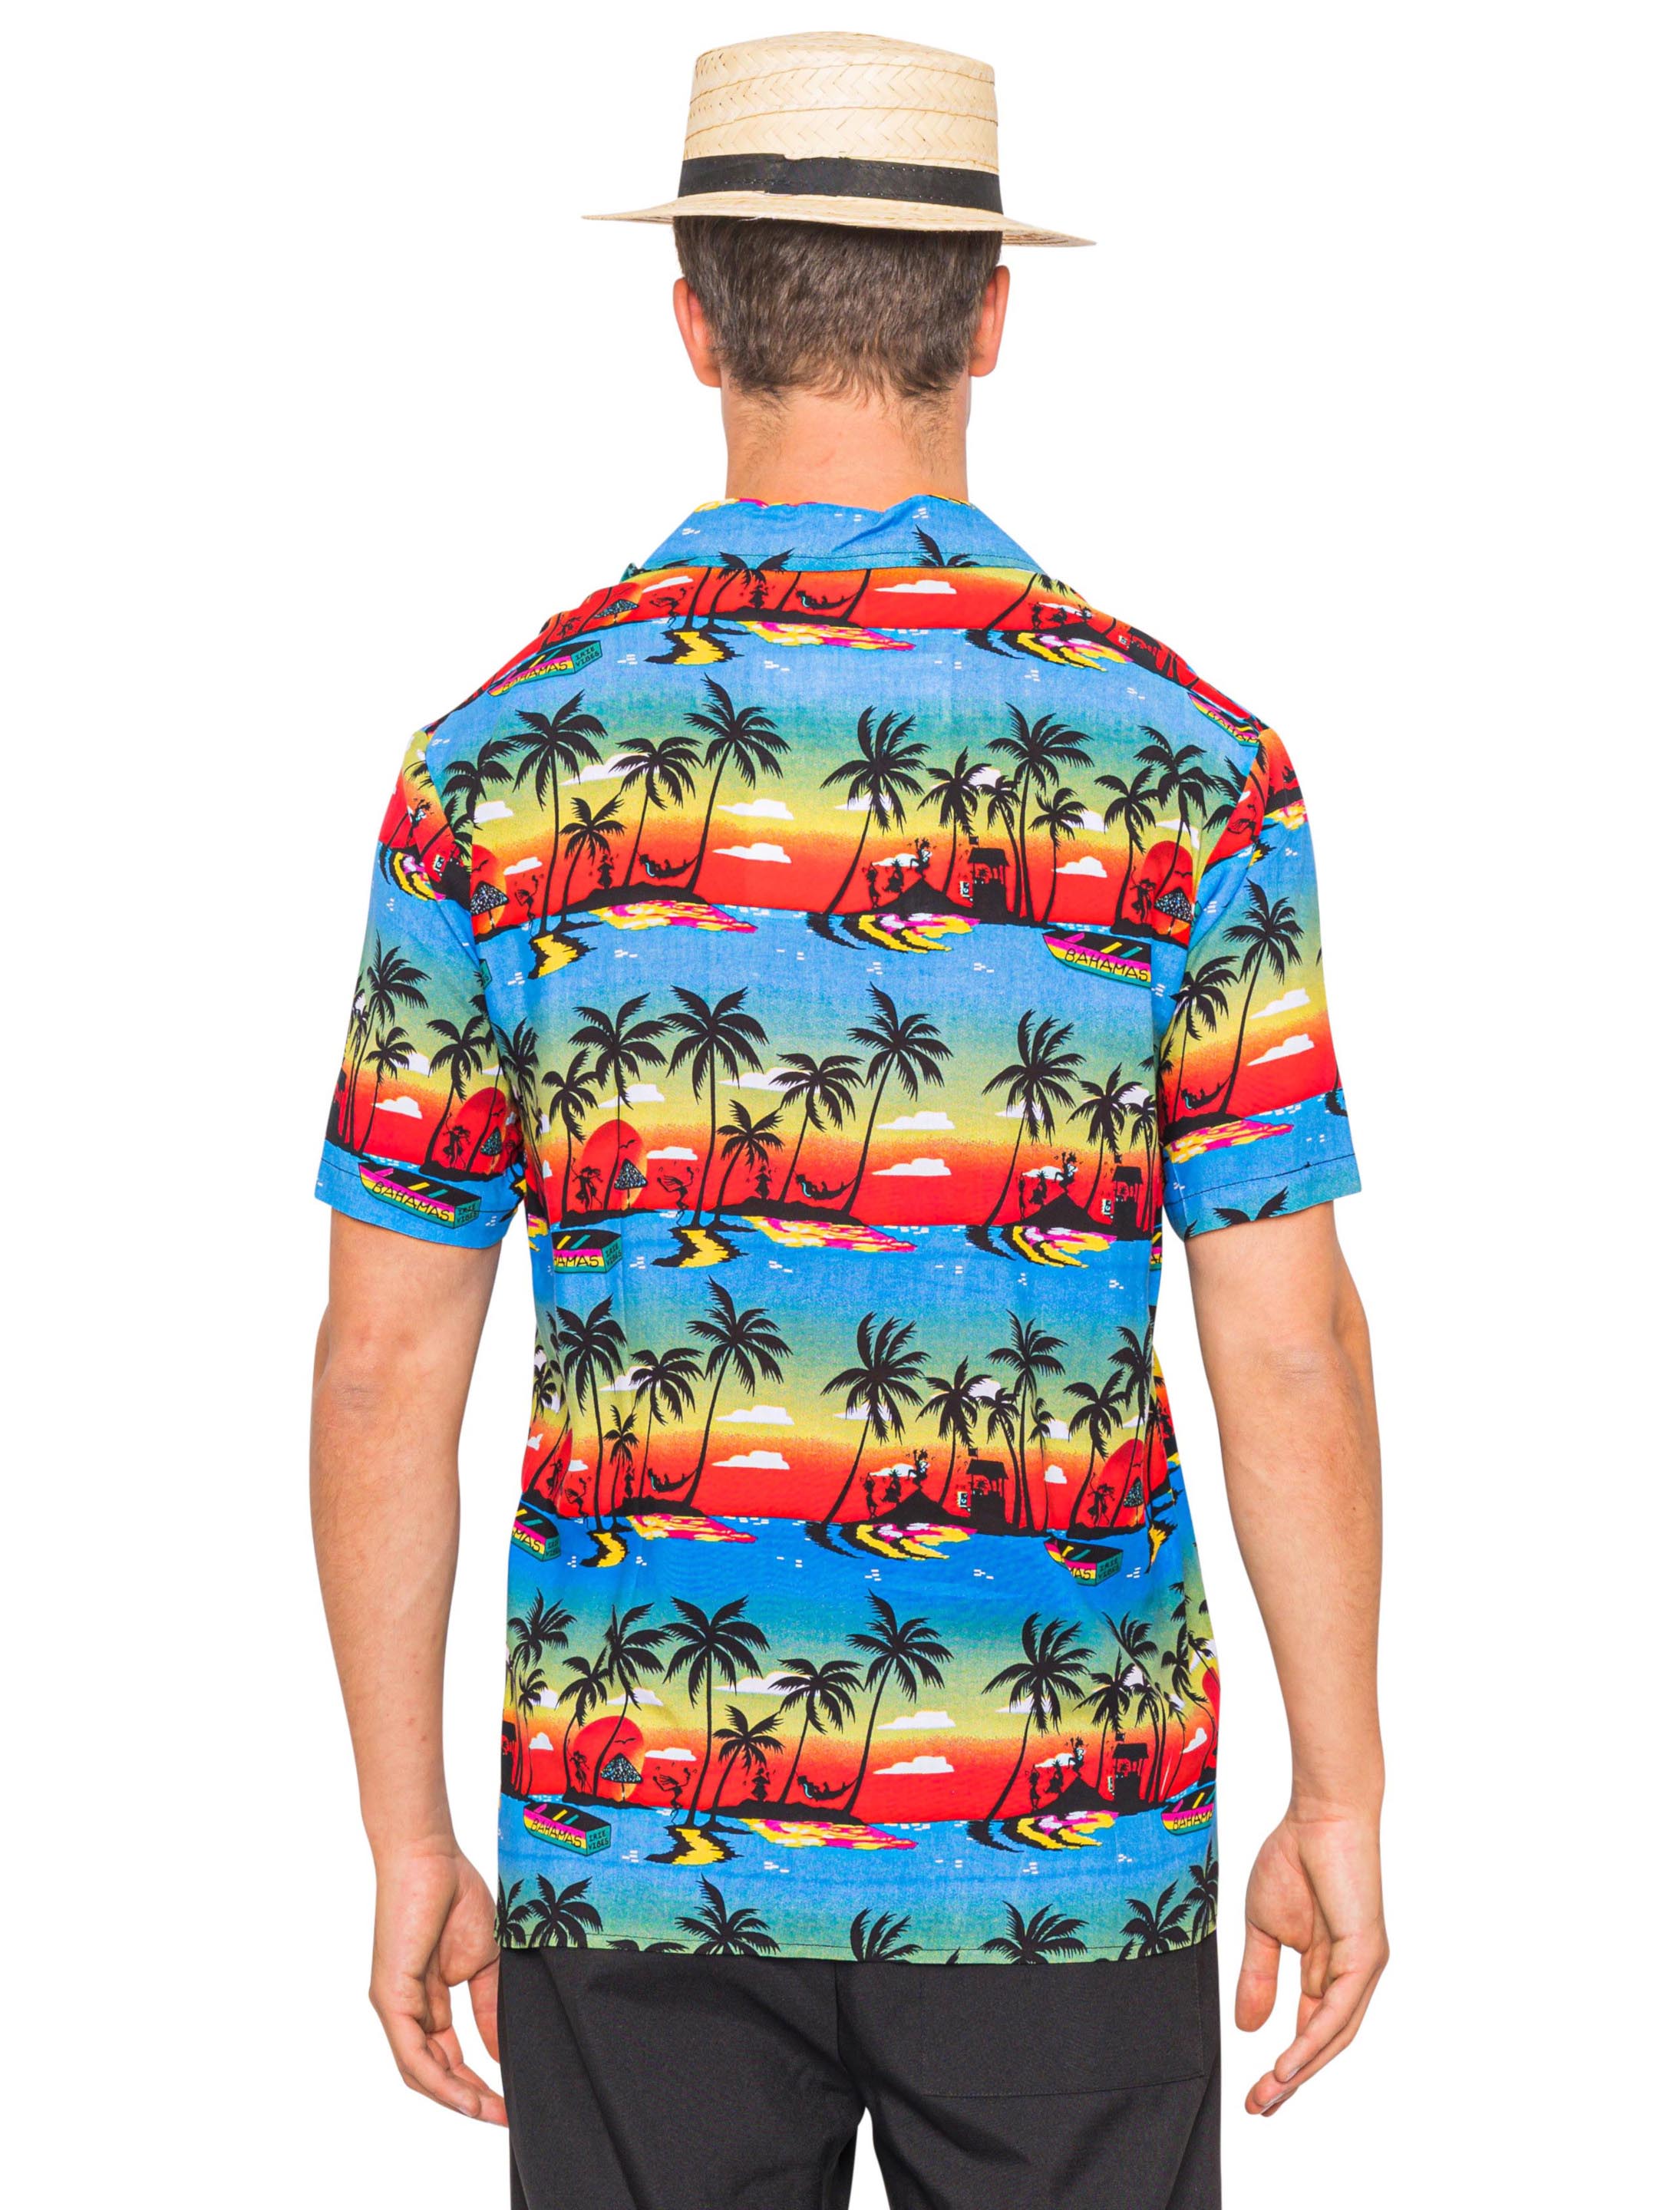 Hemd Hawaii mit Palmen für Karneval & Fasching kaufen » Deiters